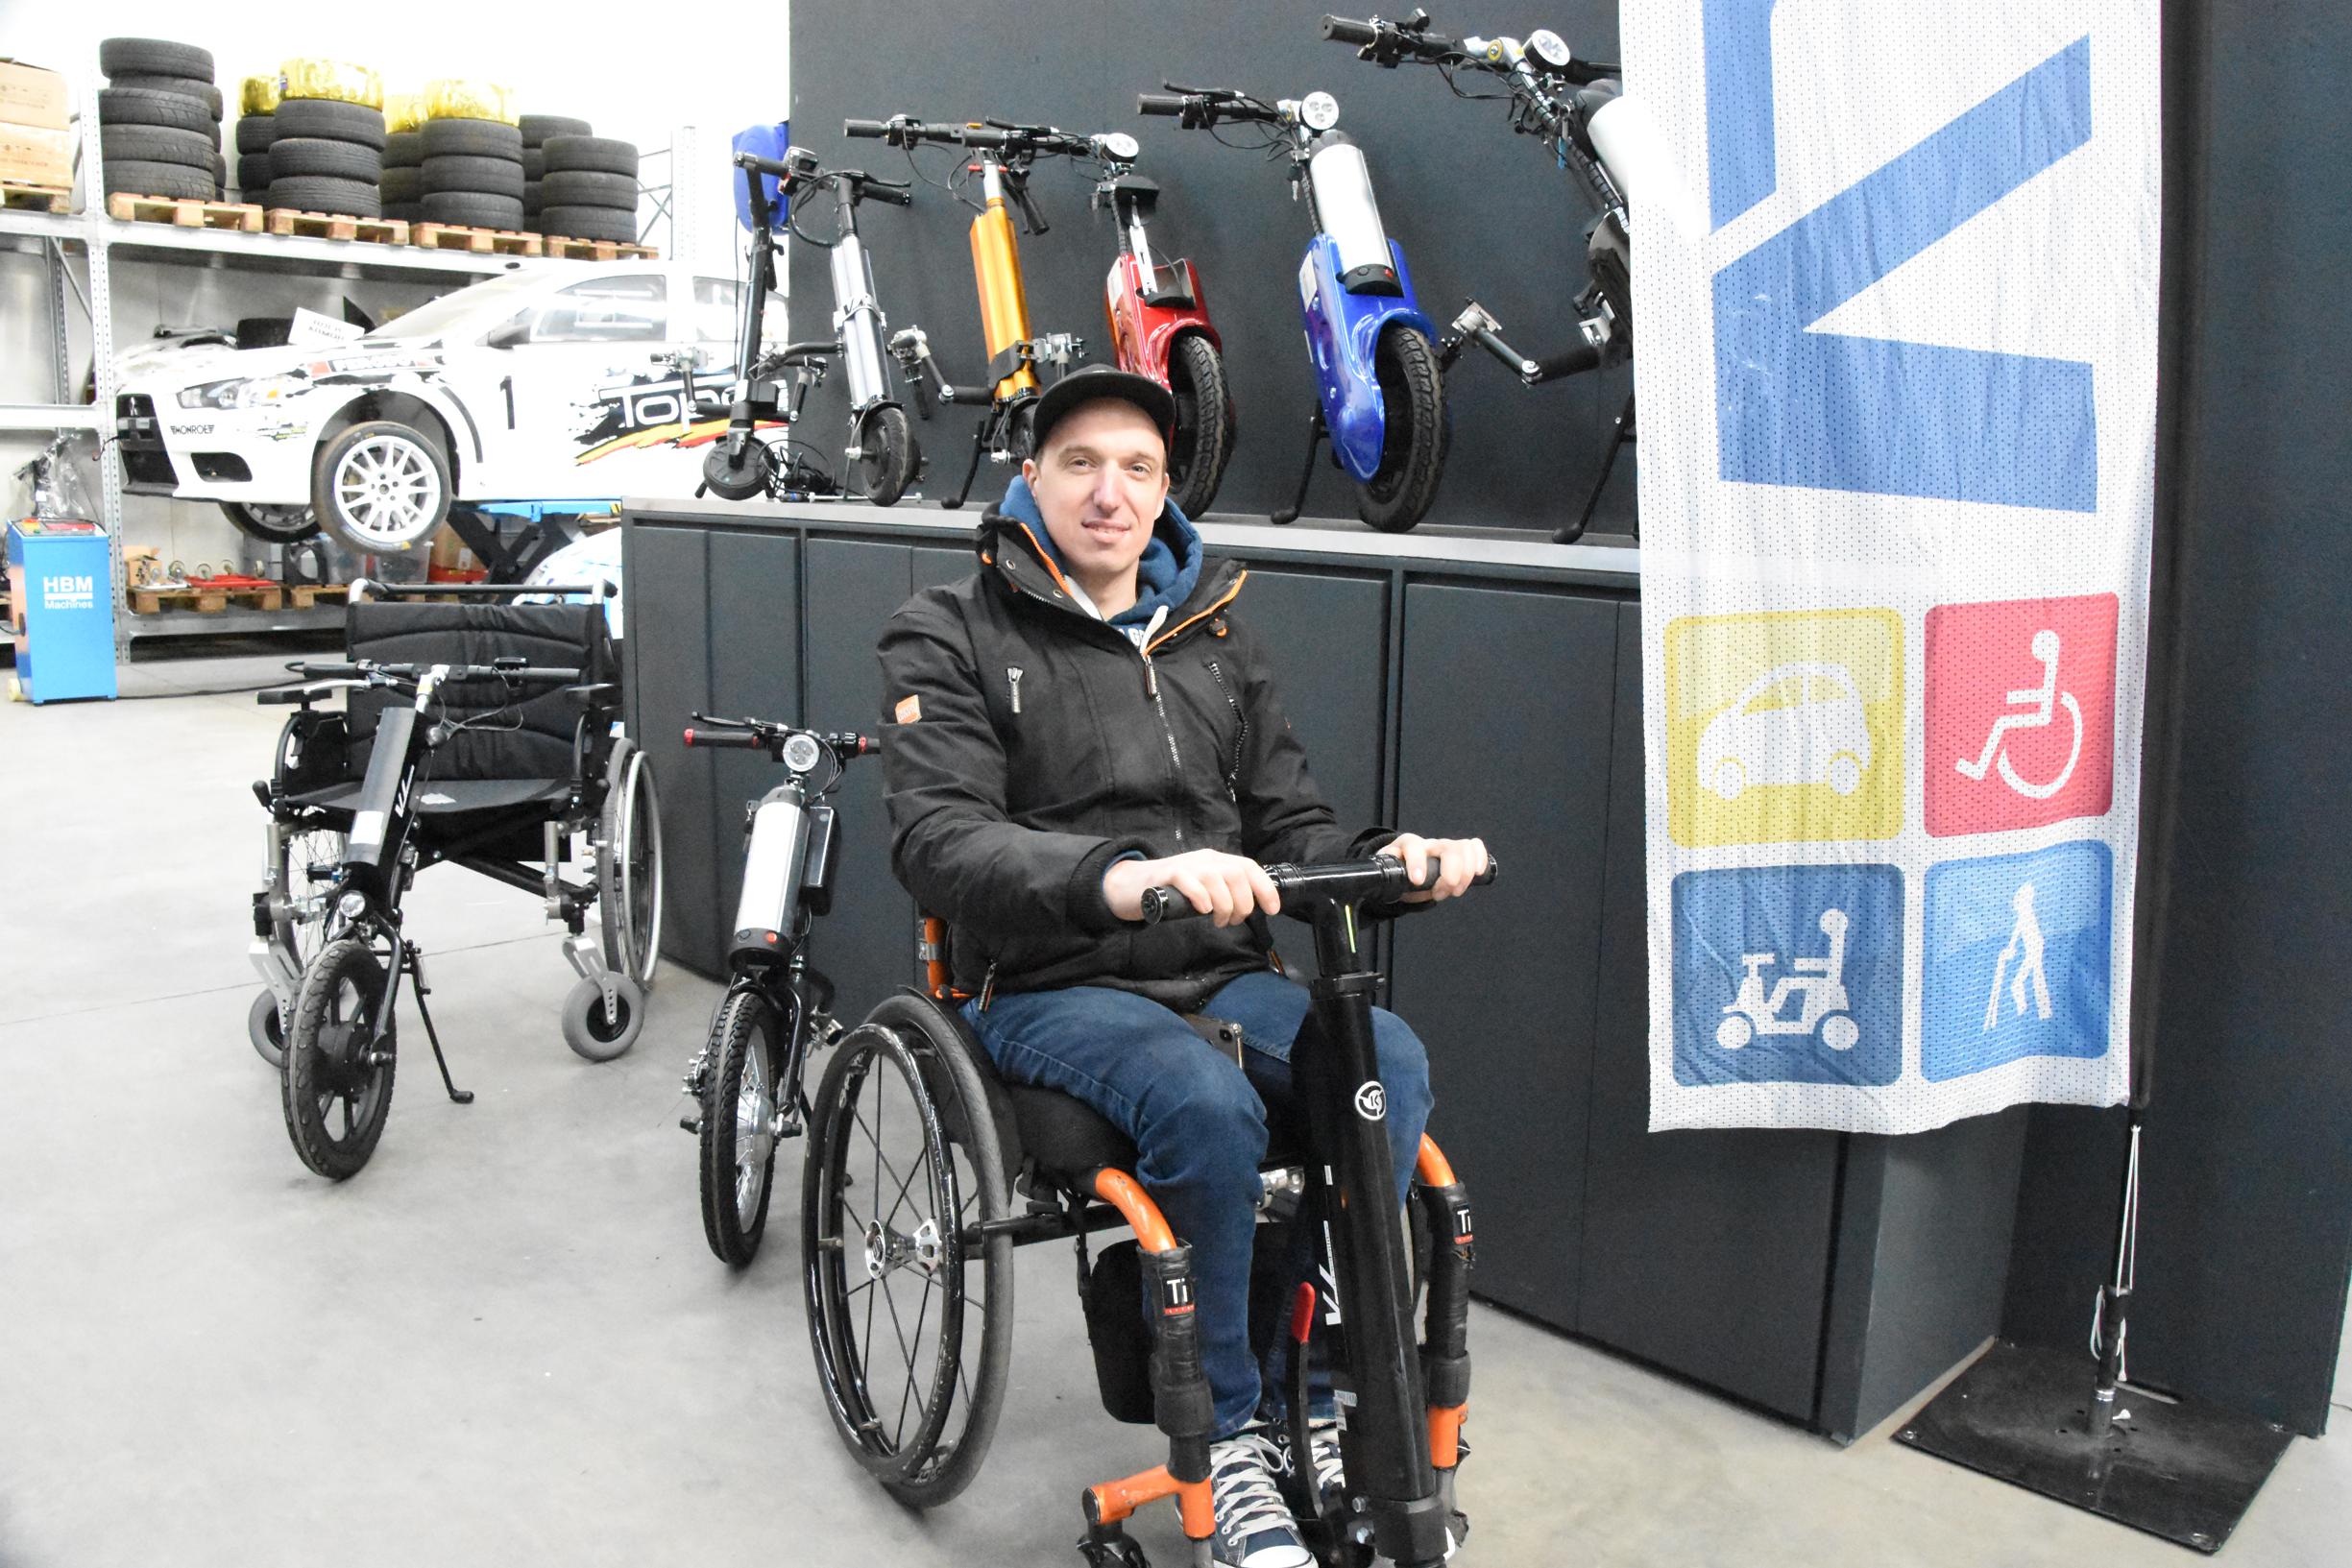 Onafhankelijkheid Tactiel gevoel Walter Cunningham Jimmy (34) zette een elektrische step voor een rolstoel, sindsdien kan hij  de vraag nauwelijks volgen: Ook mensen in een rolstoel willen terug naar  buiten” (Halle) | Het Nieuwsblad Mobile